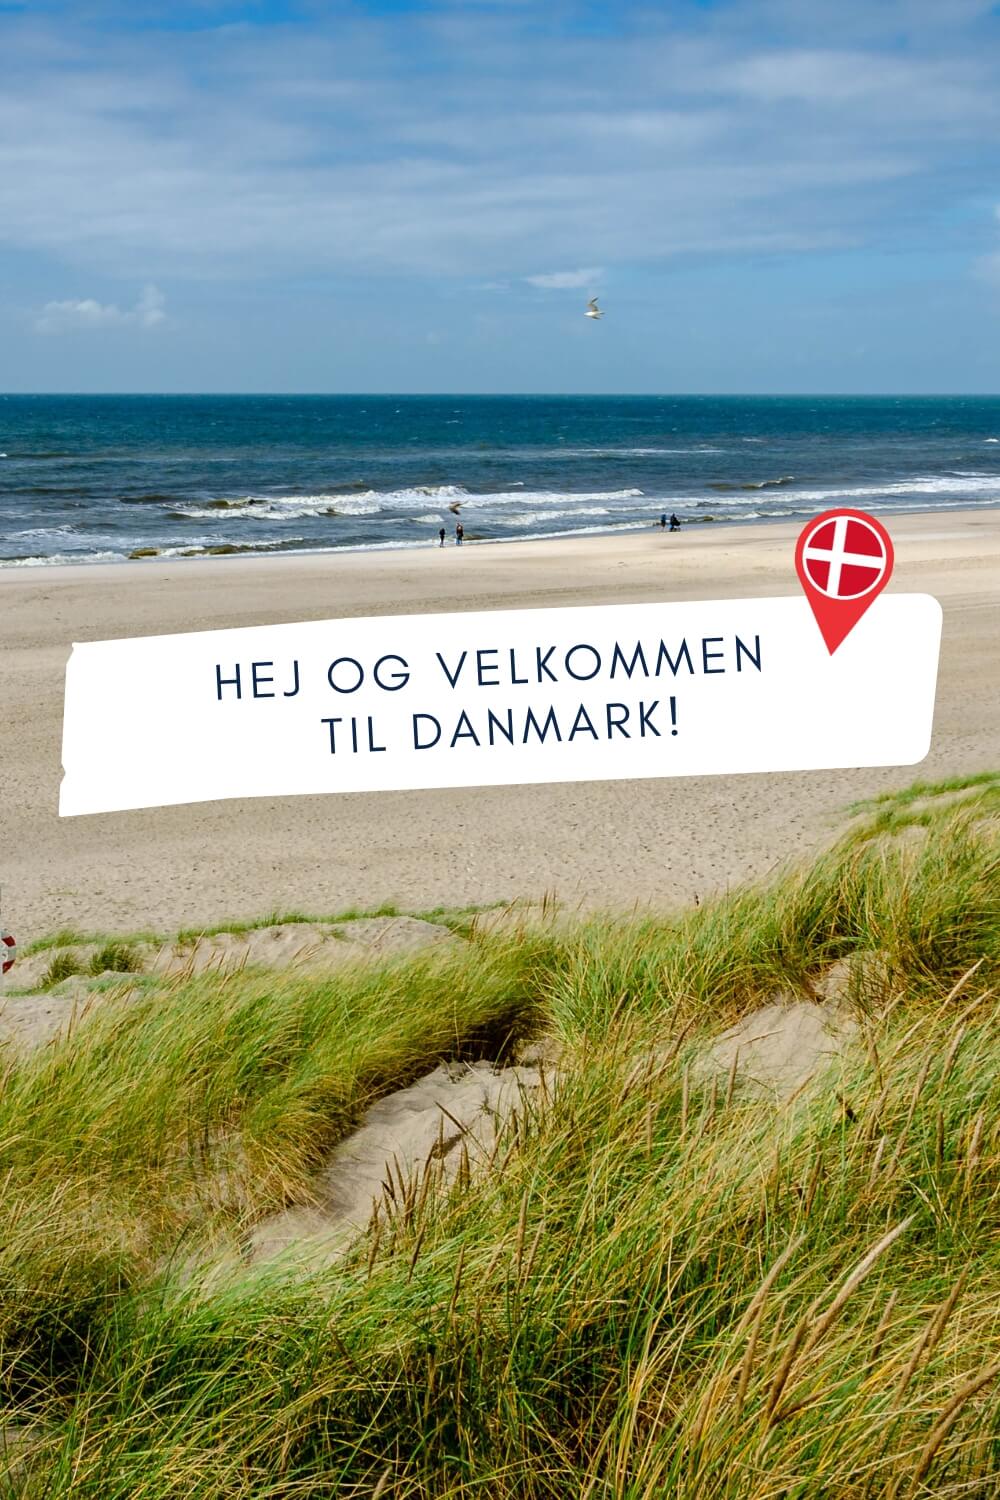 Ankommen in Dänemark: Strand